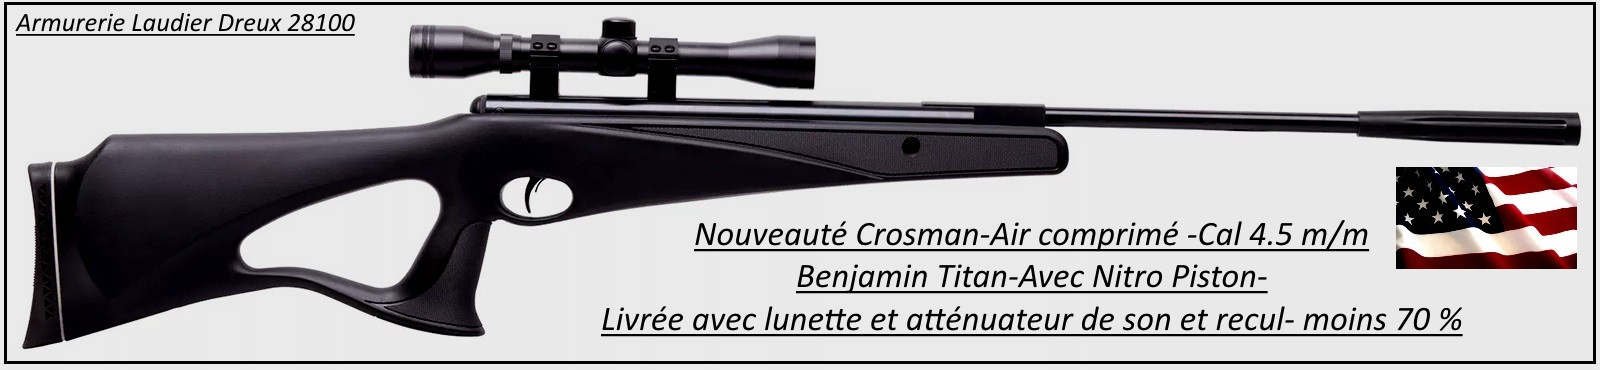 Carabine-air comprimé-Crosman-Benjamin-titan-NP-Calibre 4.5m/m-Crosse à trou synthétique-19.70 joules-+ kit lunette 4x32-Nitro piston-Promotion-Ref 27635